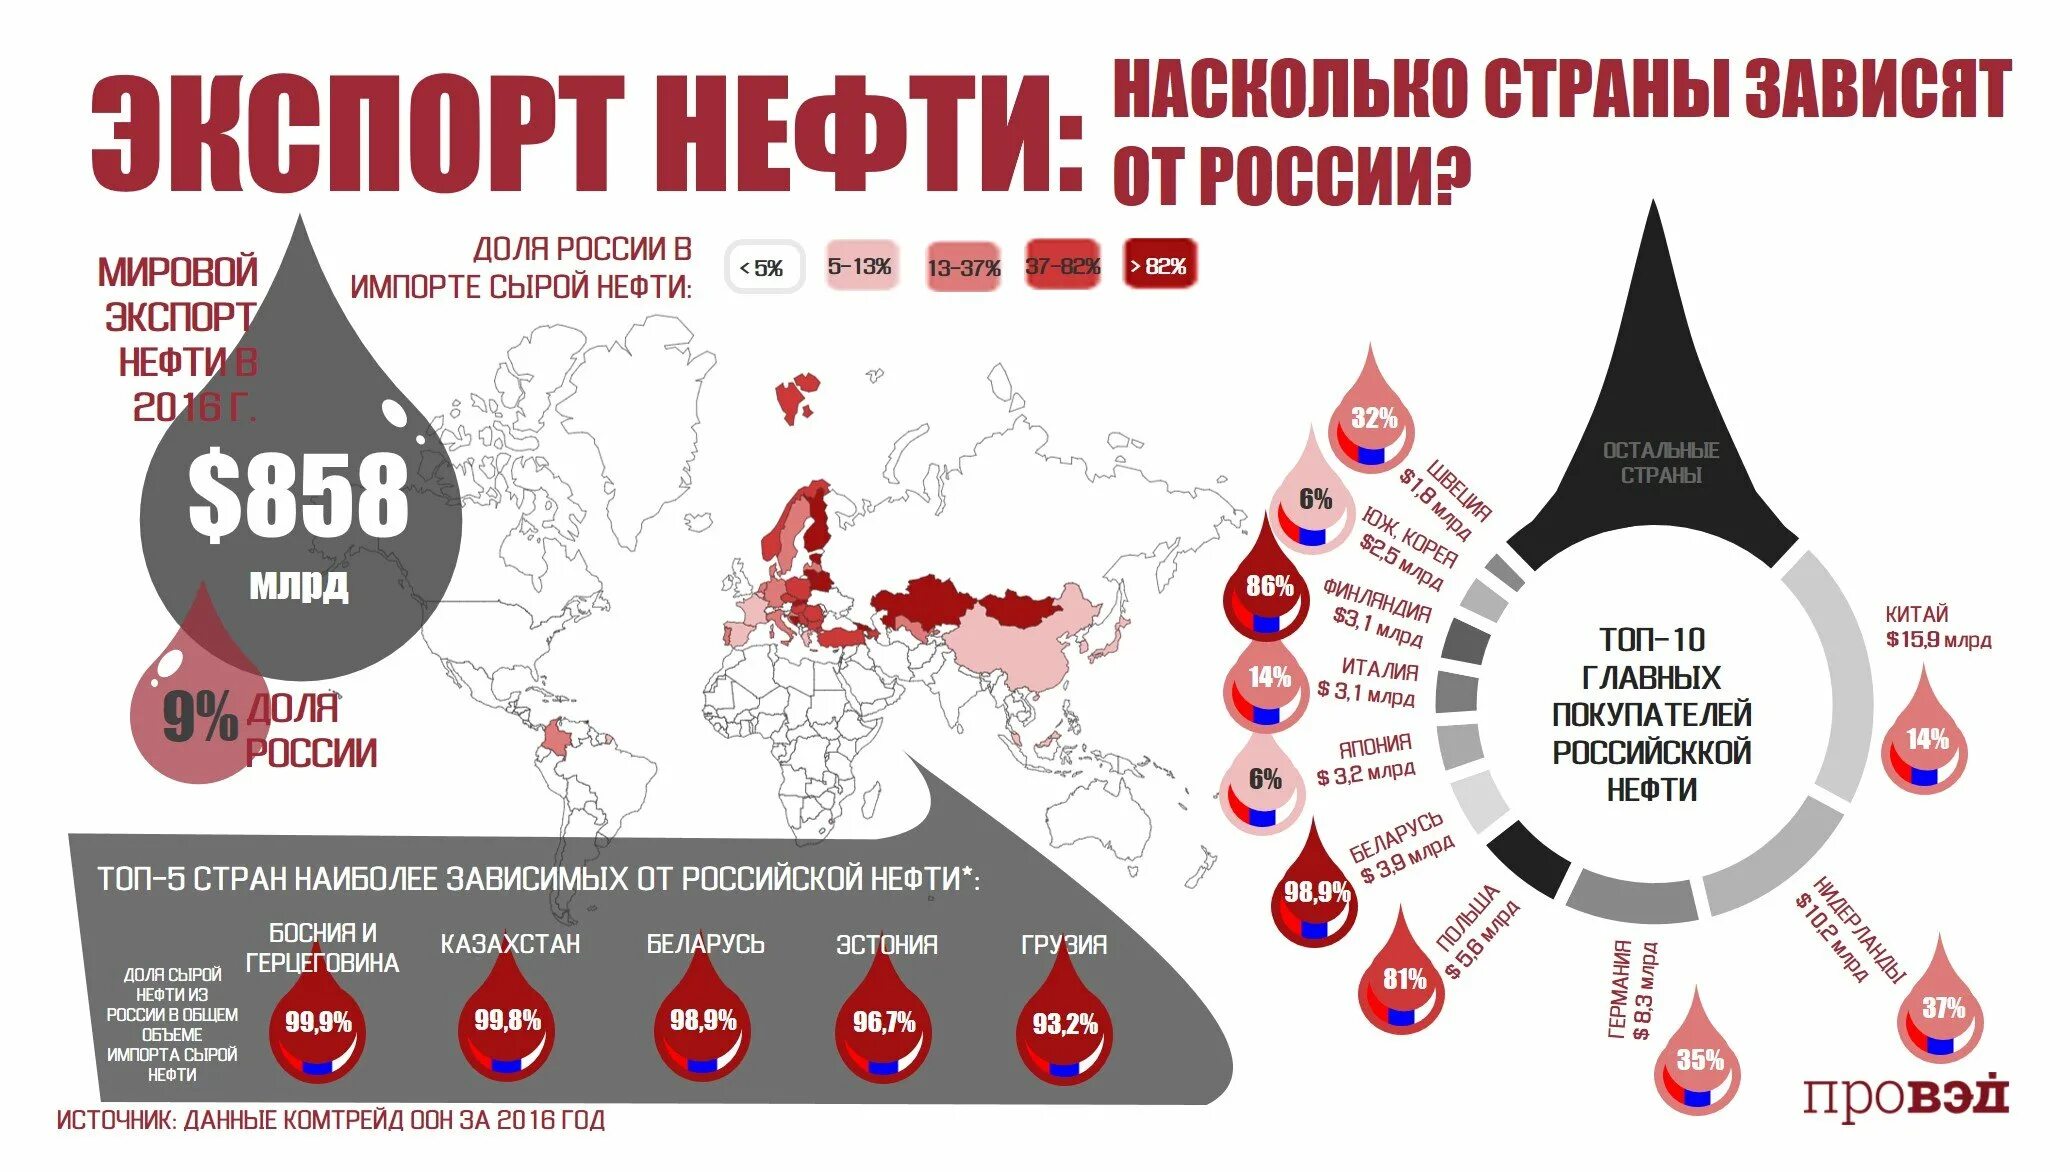 Насколько т. Зависимость стран от Российской нефти. Куда Россия продает нефть по странам. Покупатели Российской нефти страны. Зависимость стран Европы от Российской нефти.